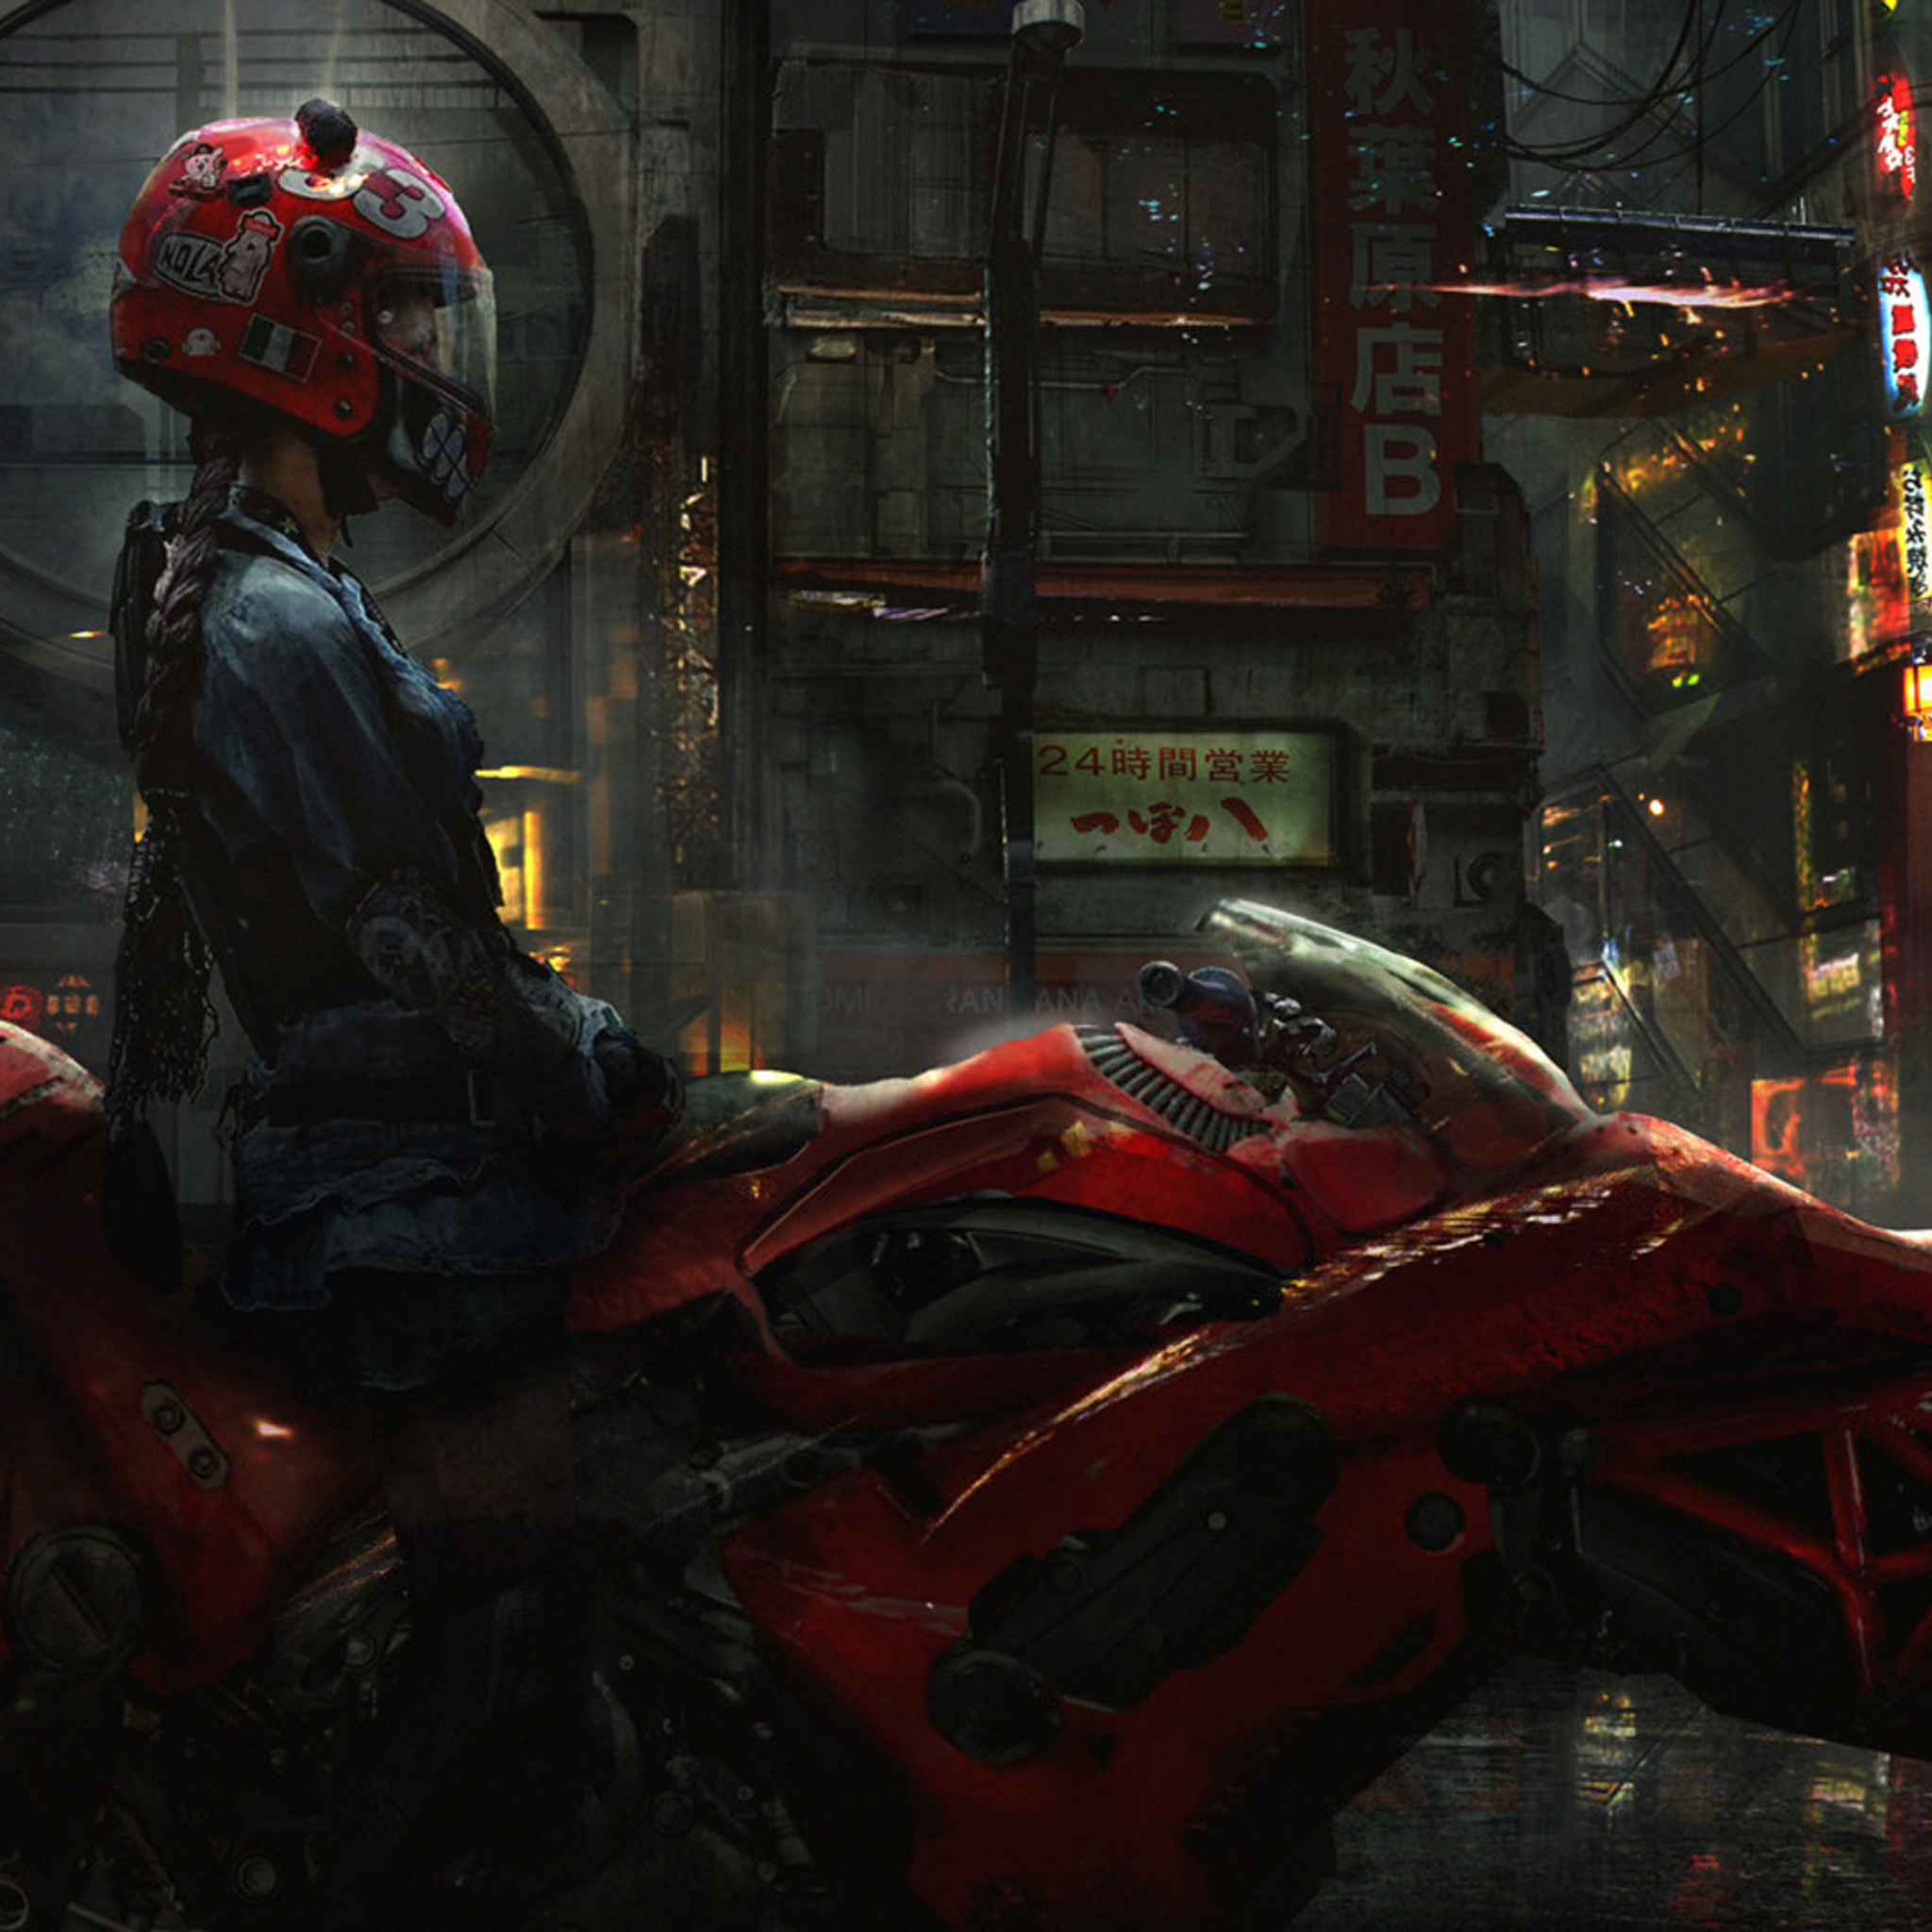 biker-cyberpunk-girl-scifi-b4.jpg